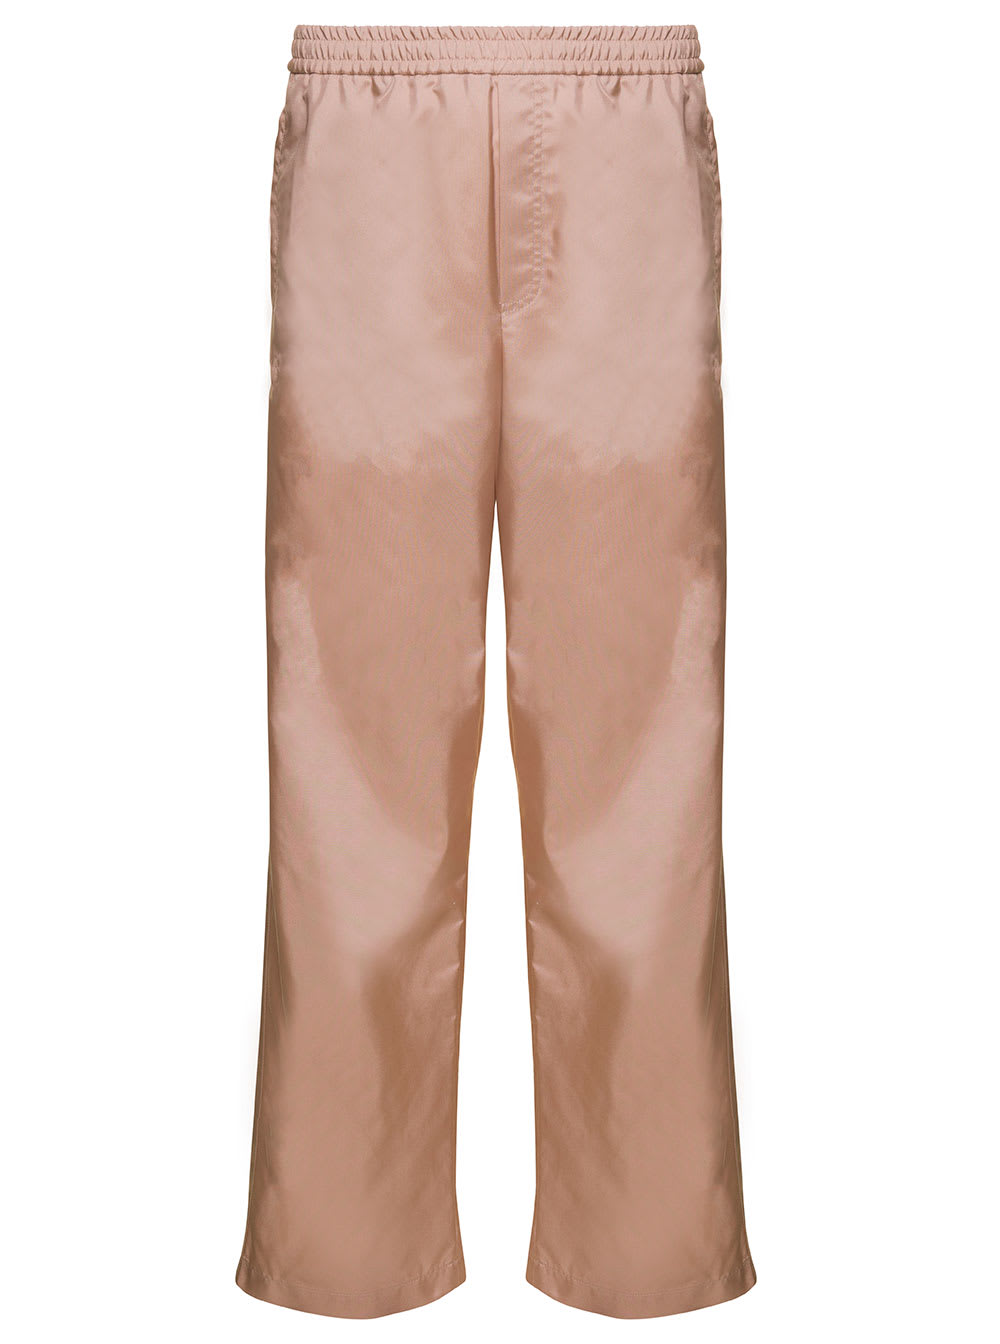 Pantalone Jogger Set Textured Nylon